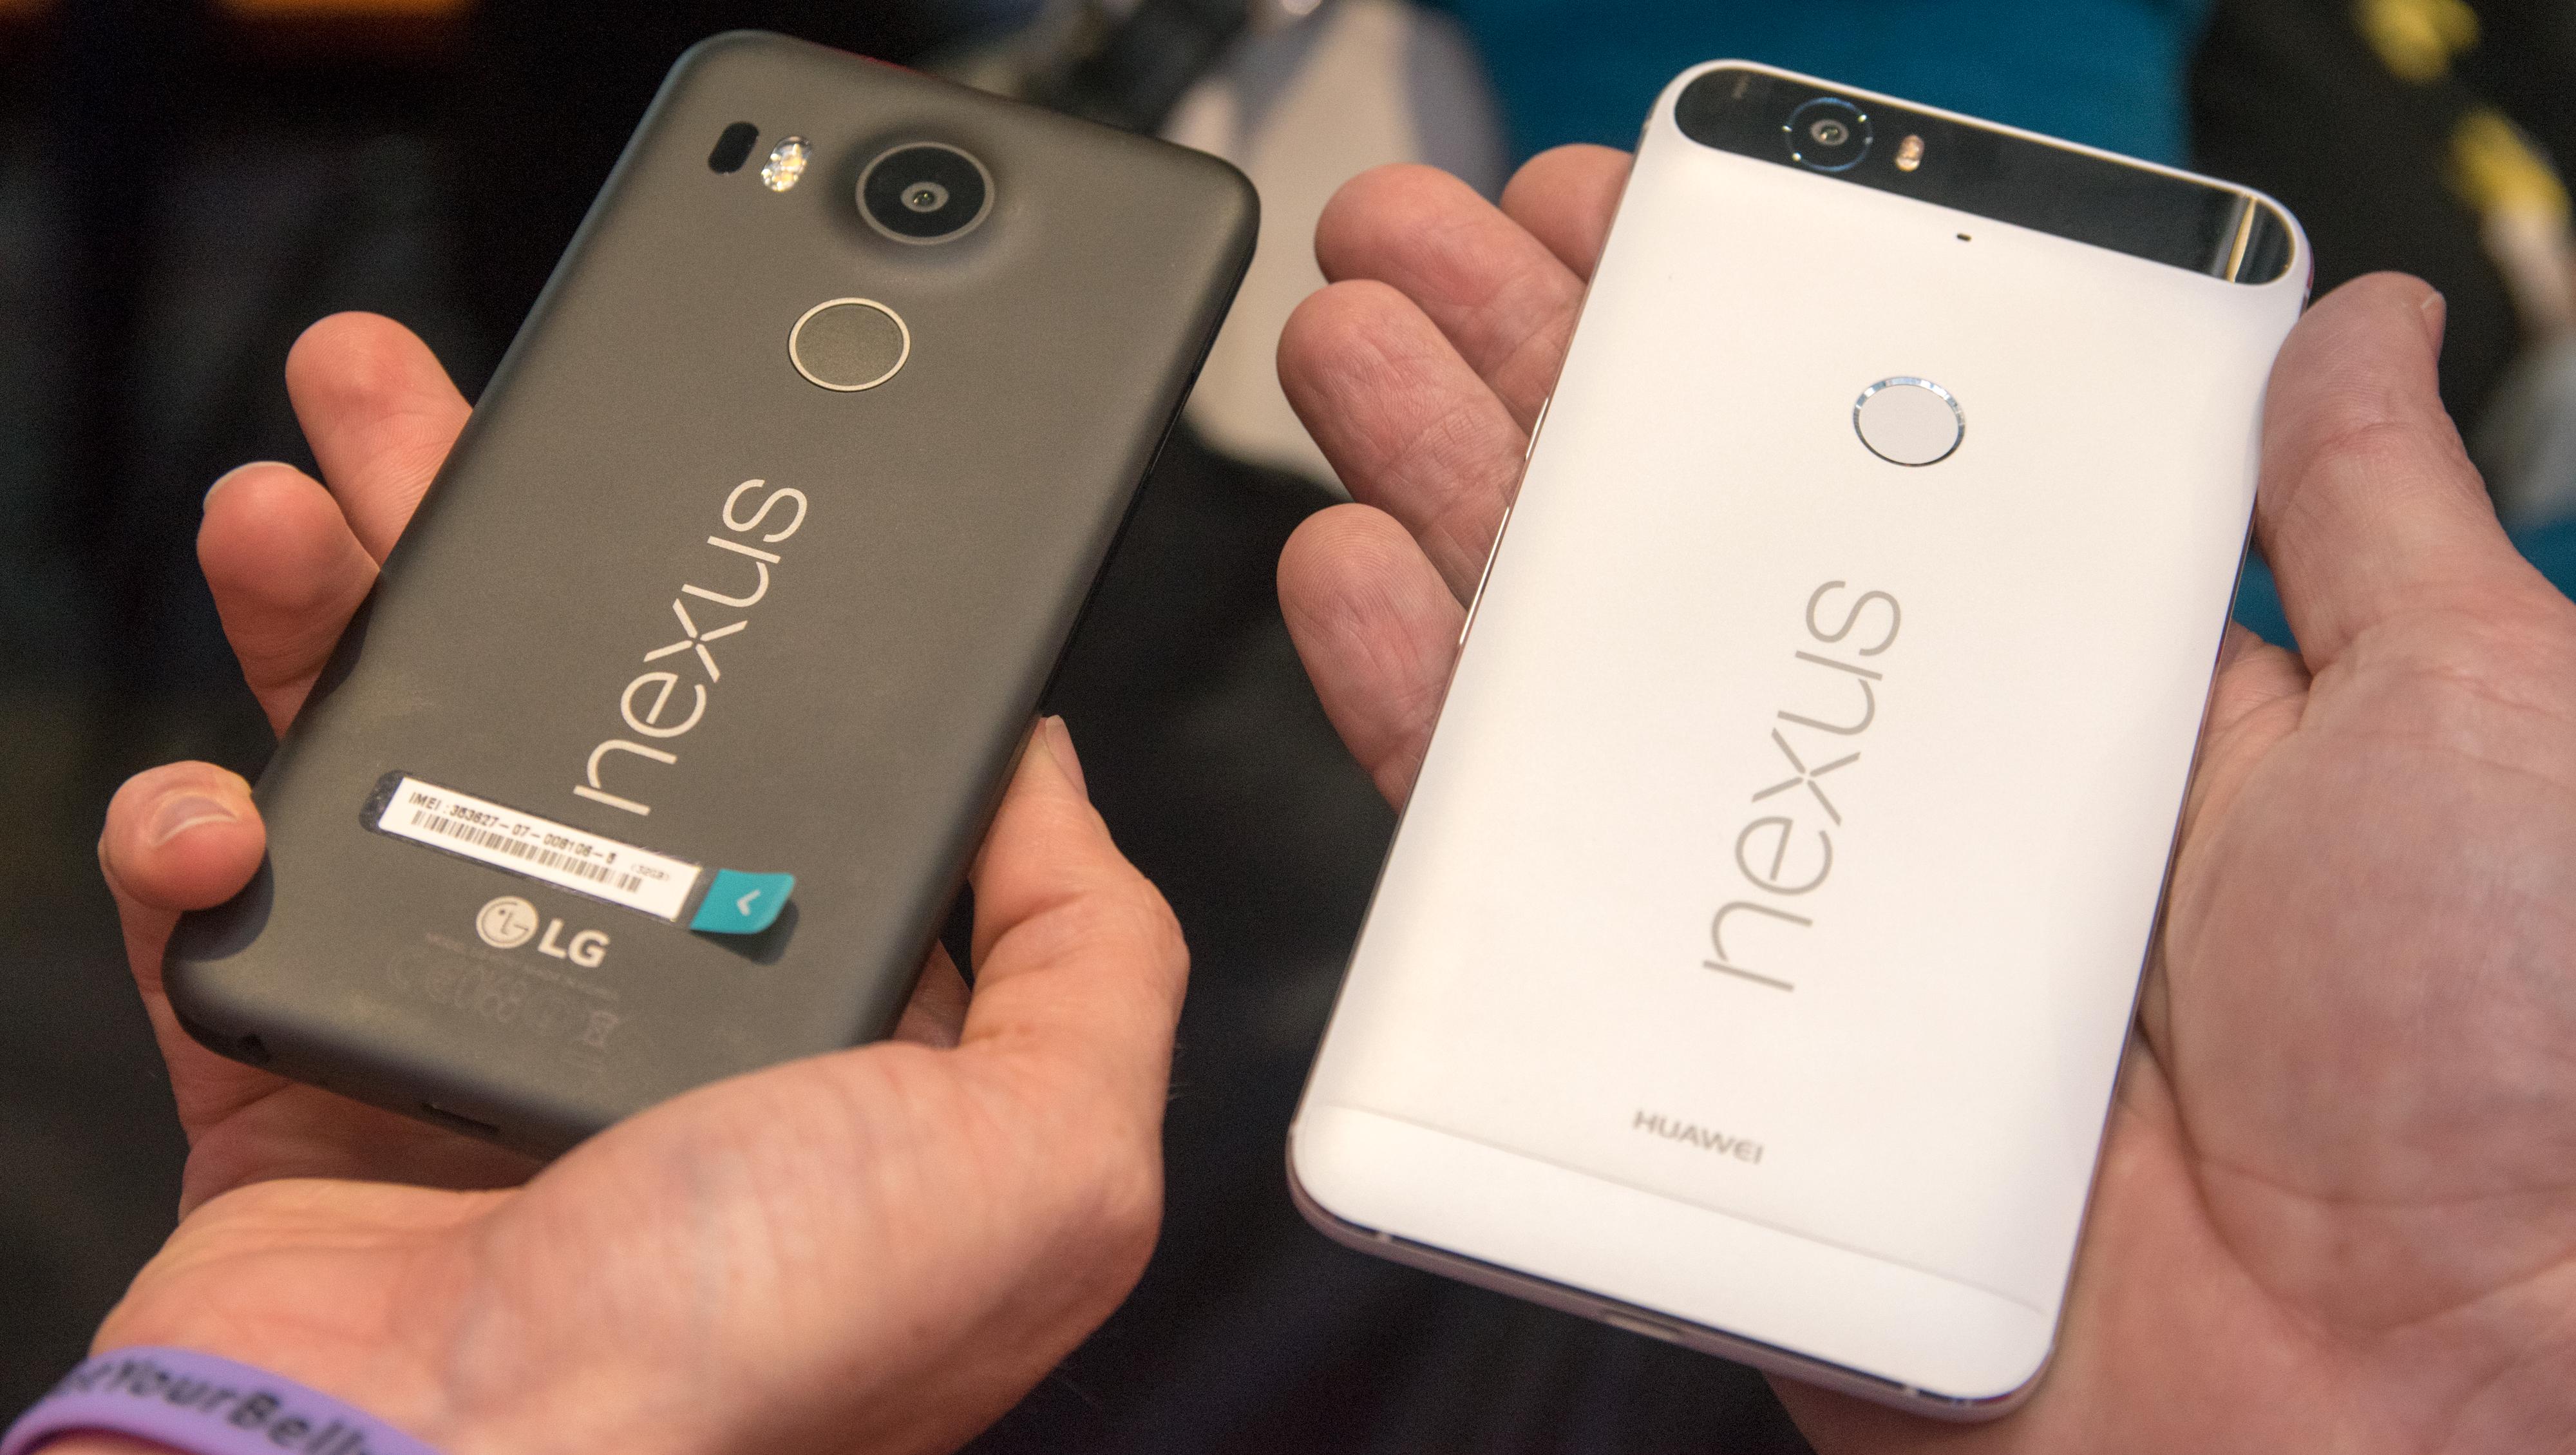 Nexus 5X til venstre og Nexus 6P til høyre. Foto: Finn Jarle Kvalheim, Tek.no